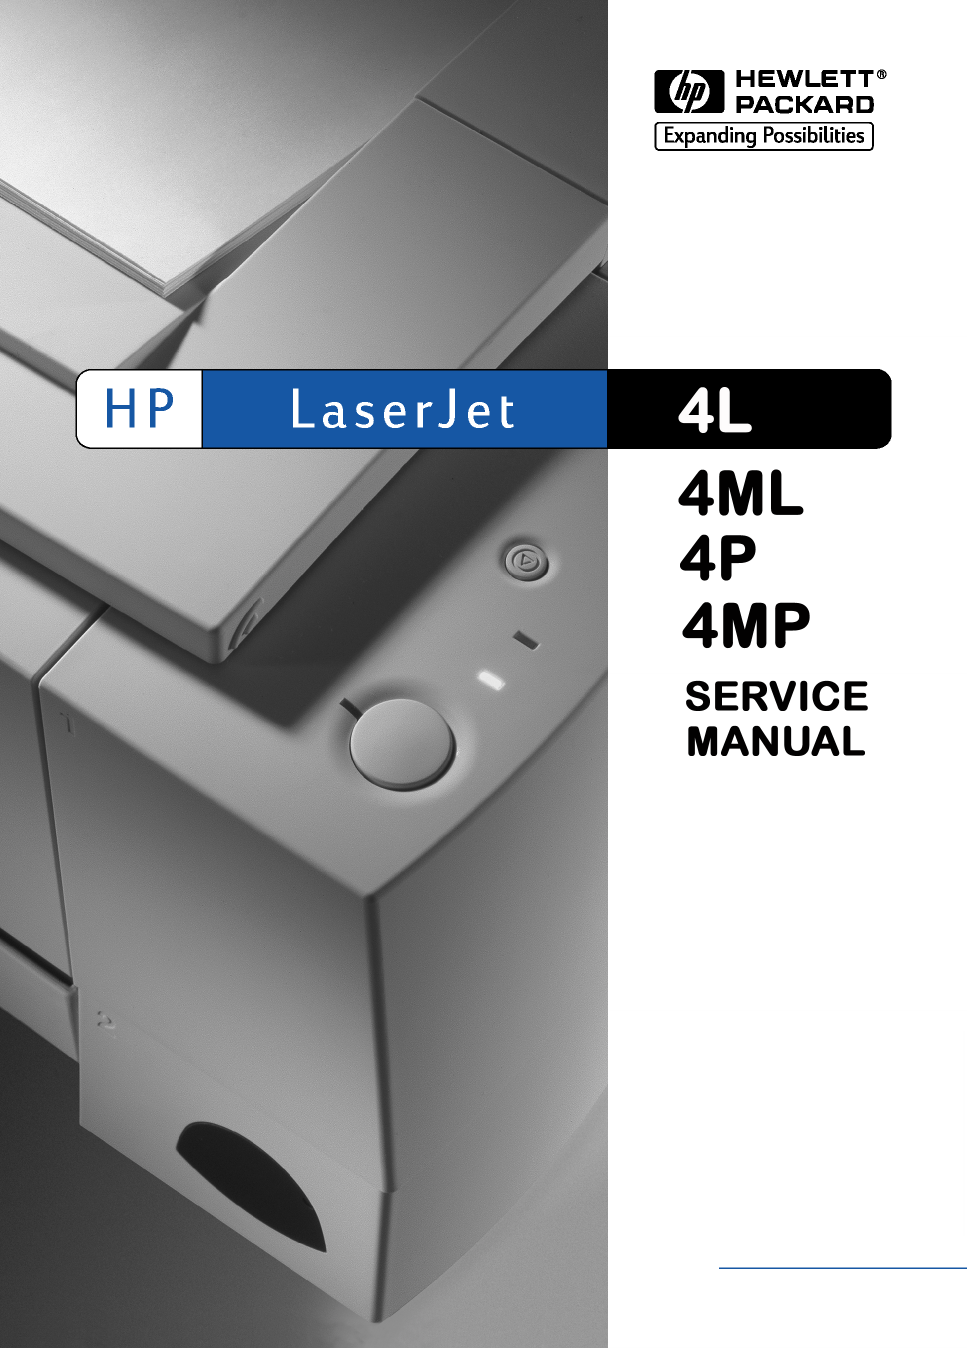 Refurbished RG5-0886 Paper Output Rebuild Kit for HP LaserJet 4 and 5 